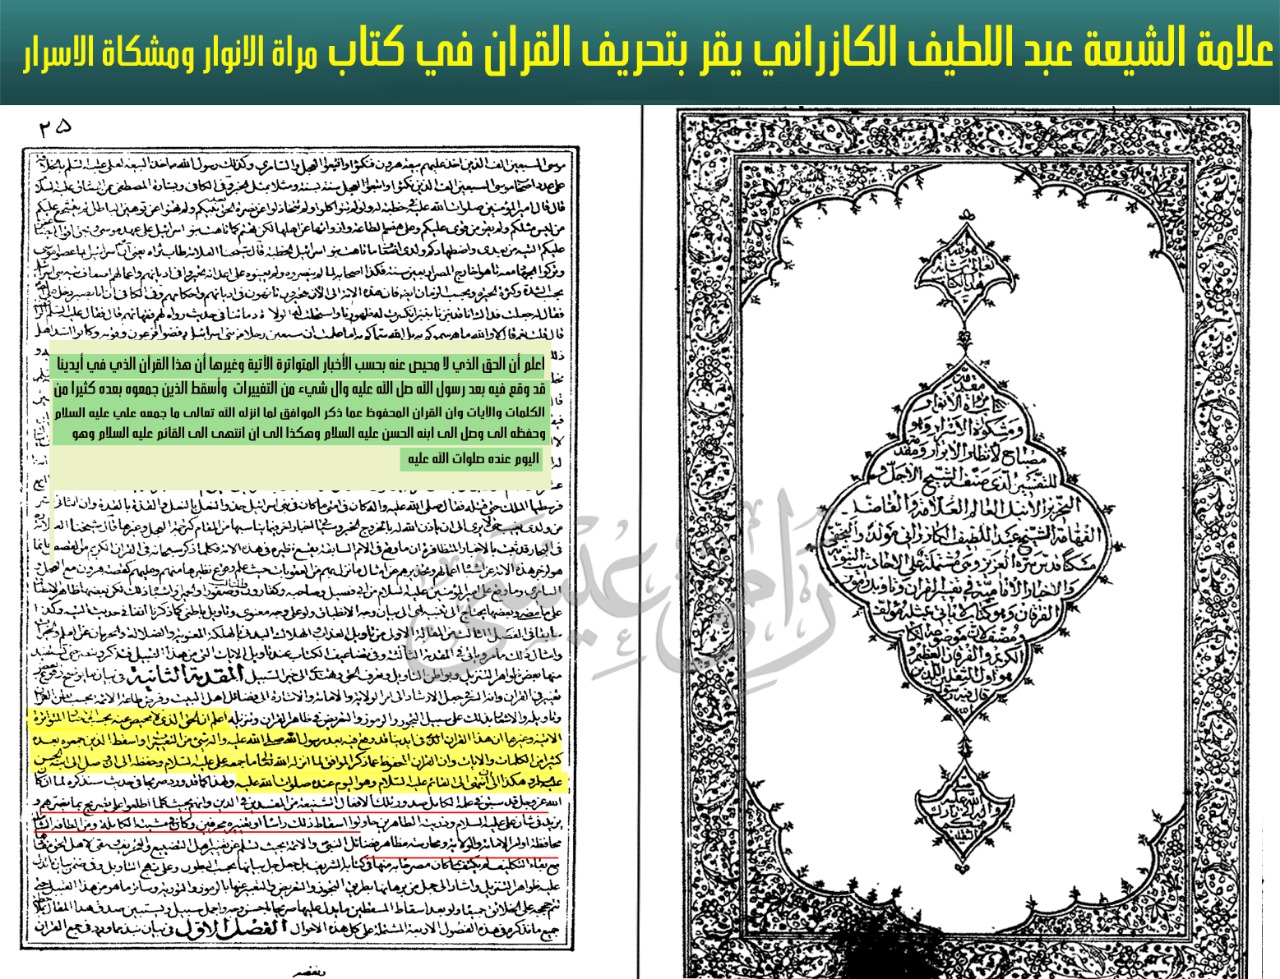 علامة الشيعة عبد اللطيف الكازراني يعترف بتحريف الشيعة للقرآن الكريم